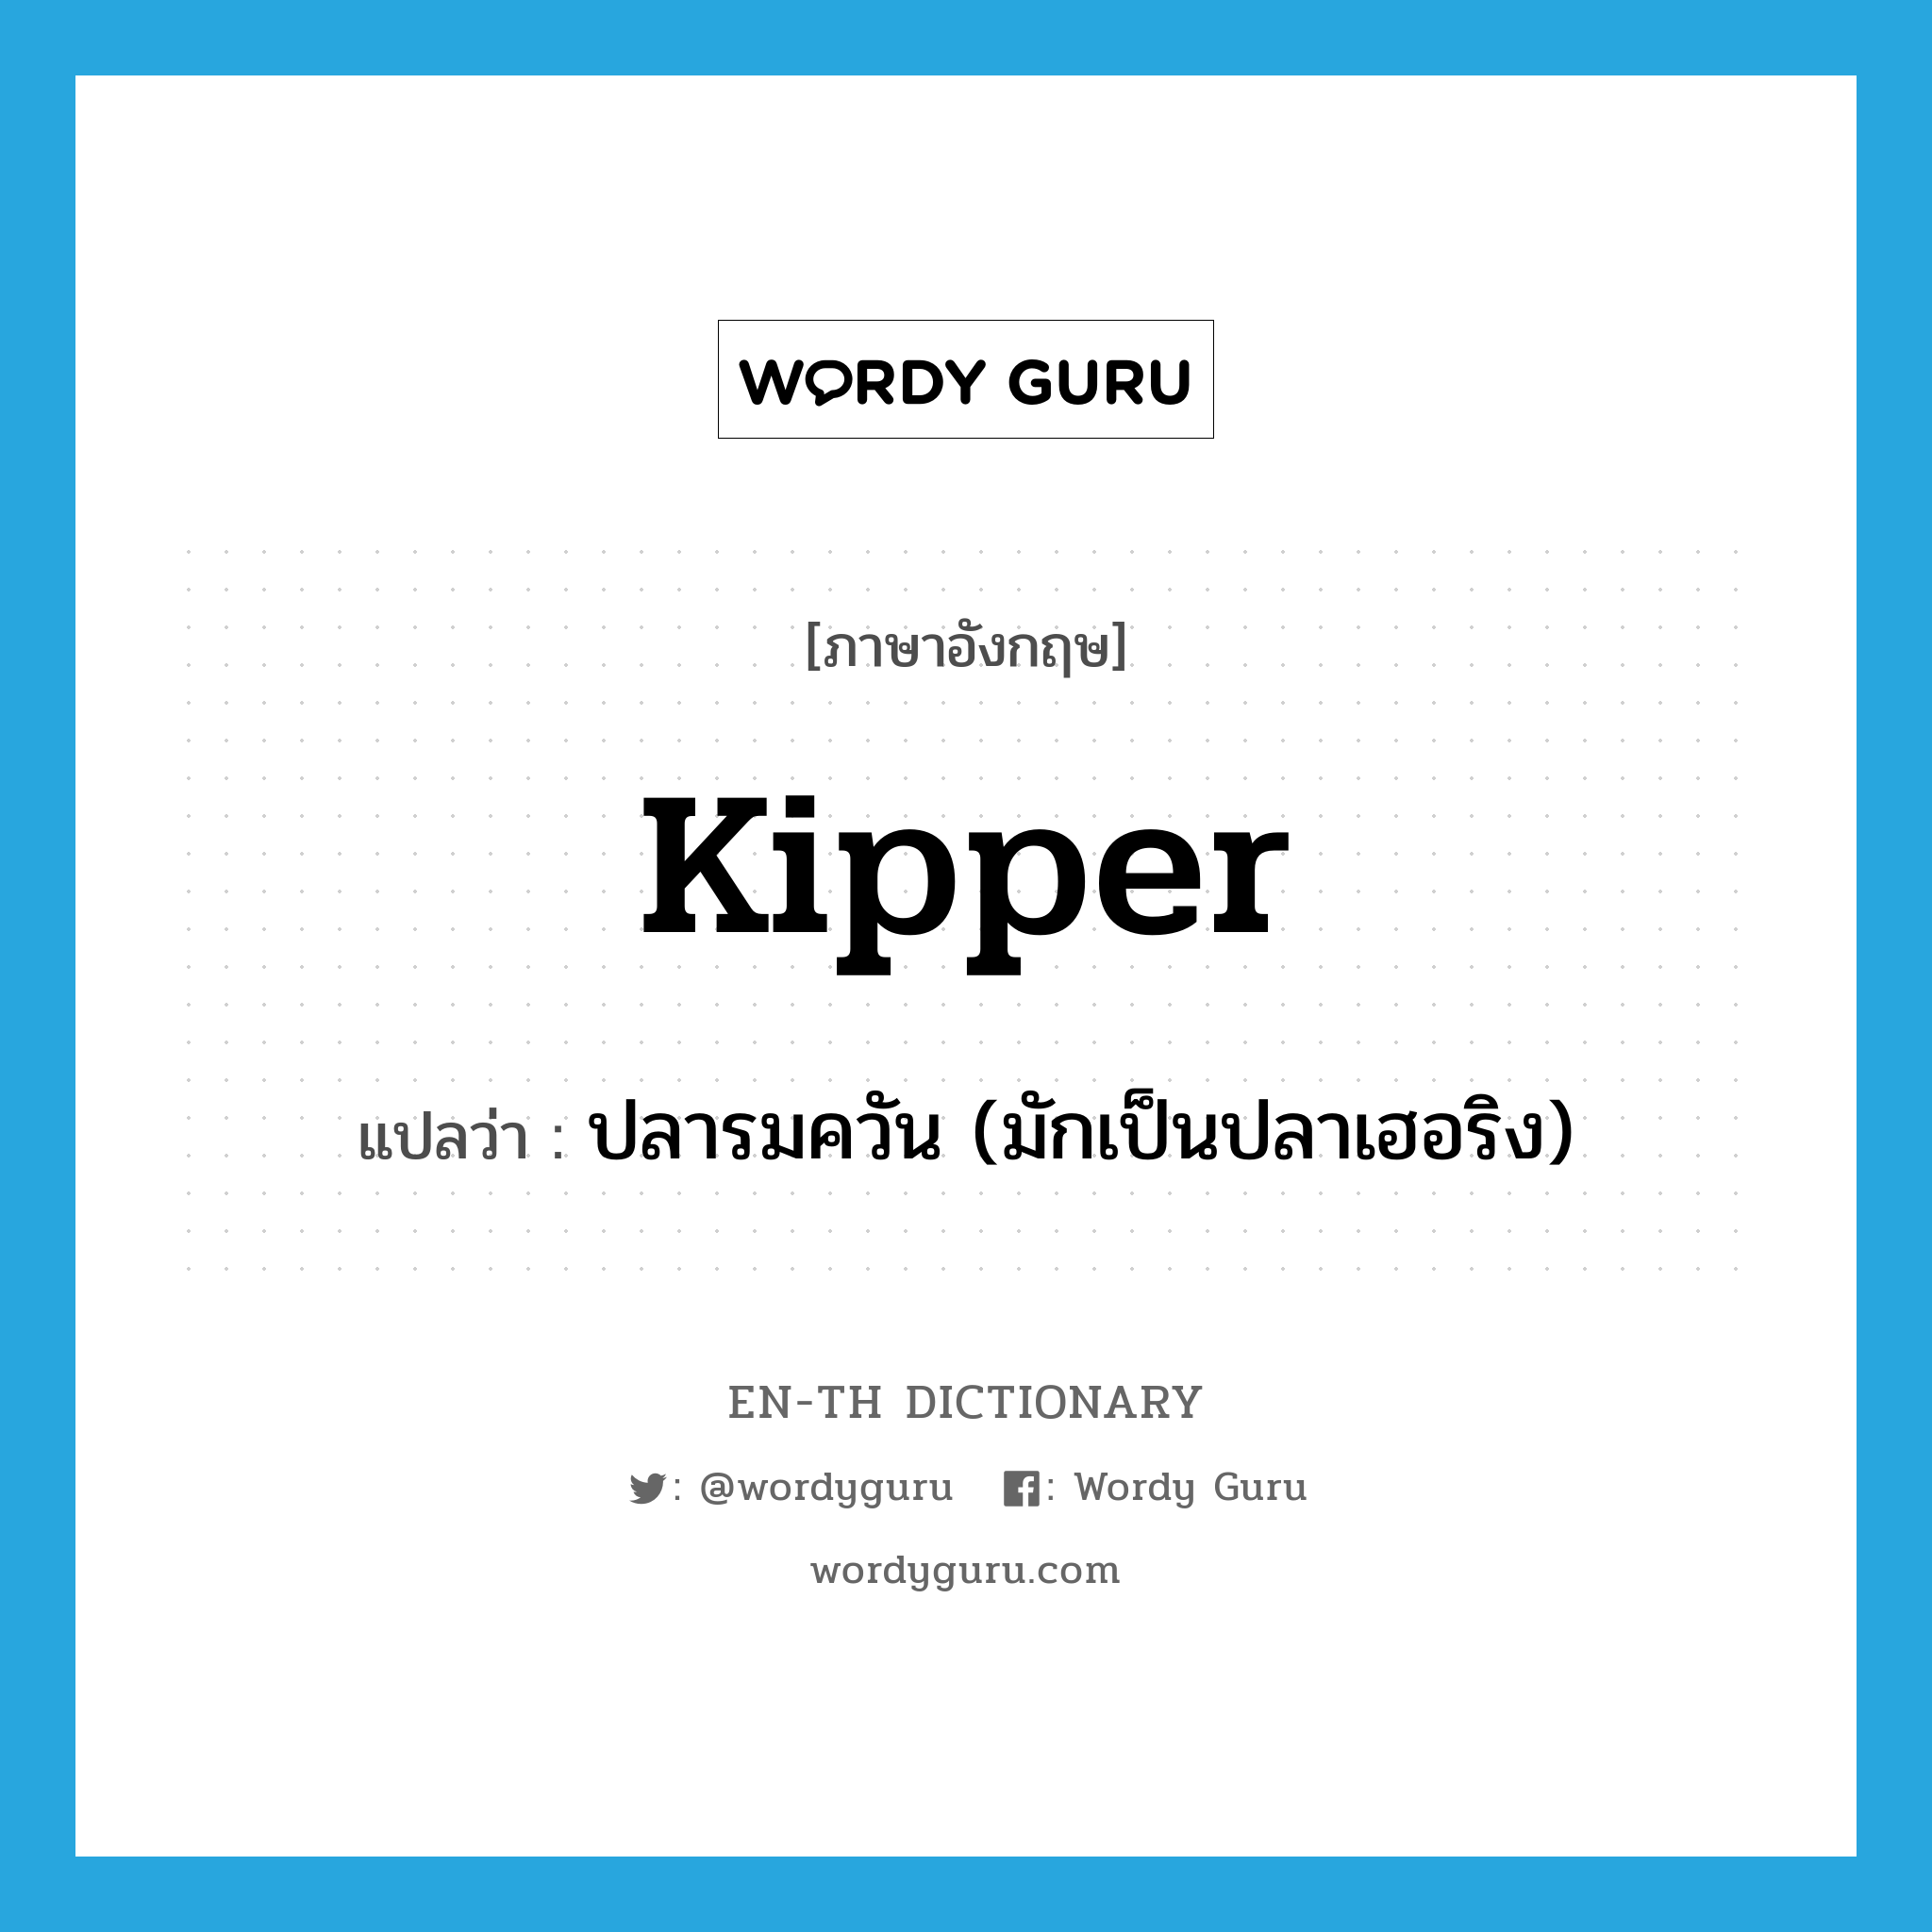 kipper แปลว่า?, คำศัพท์ภาษาอังกฤษ kipper แปลว่า ปลารมควัน (มักเป็นปลาเฮอริง) ประเภท N หมวด N